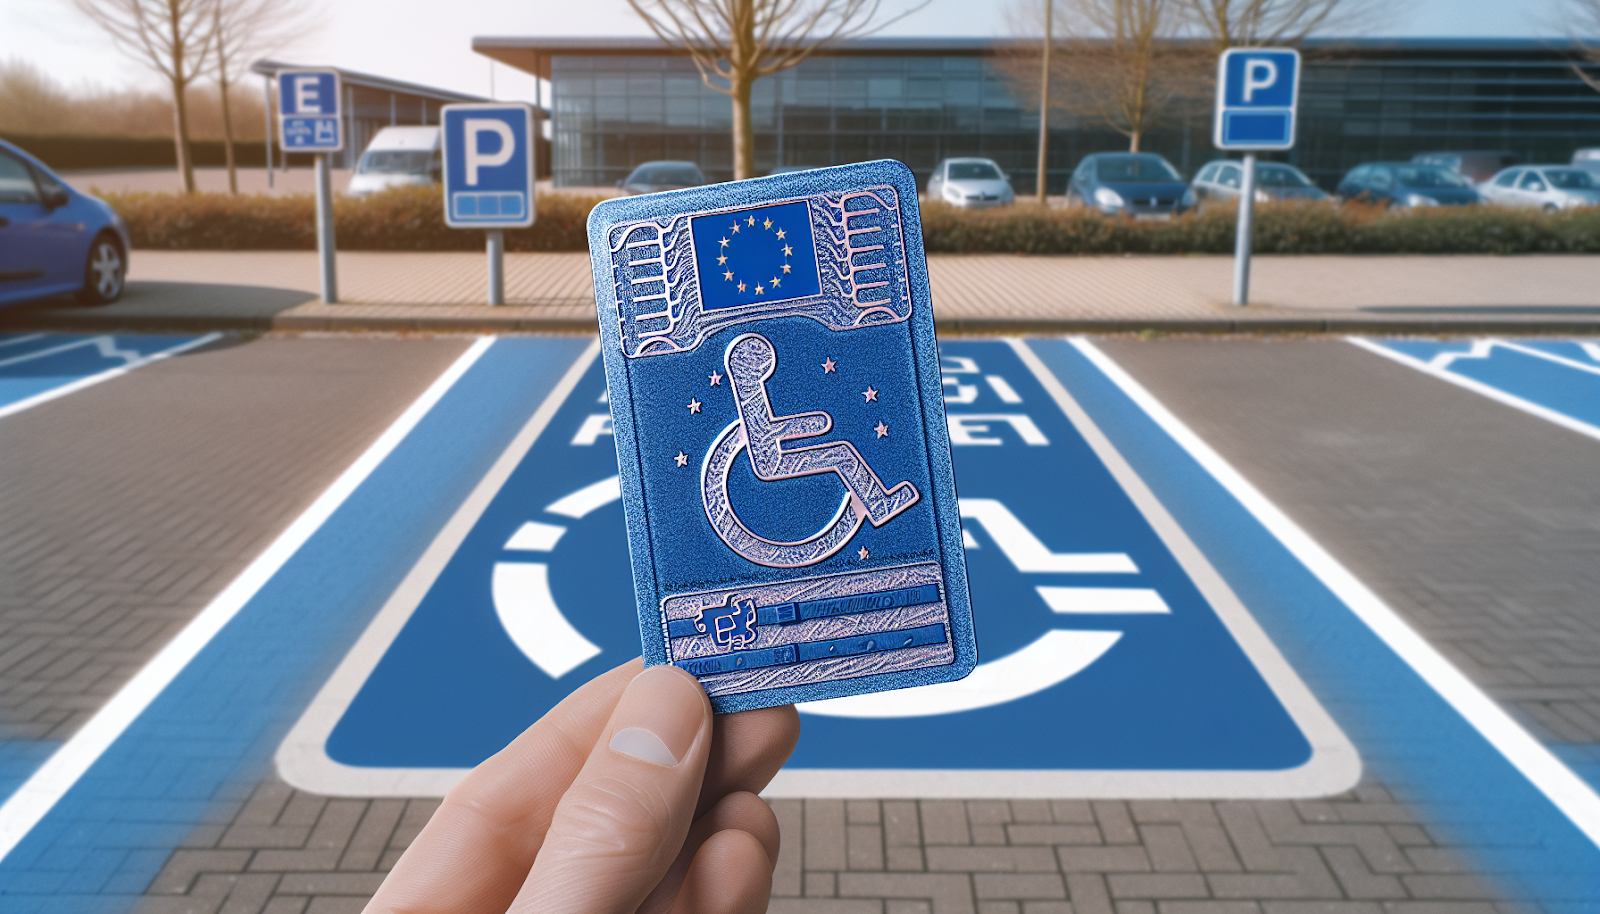 Kostenfreies Parken für Menschen mit Behinderung